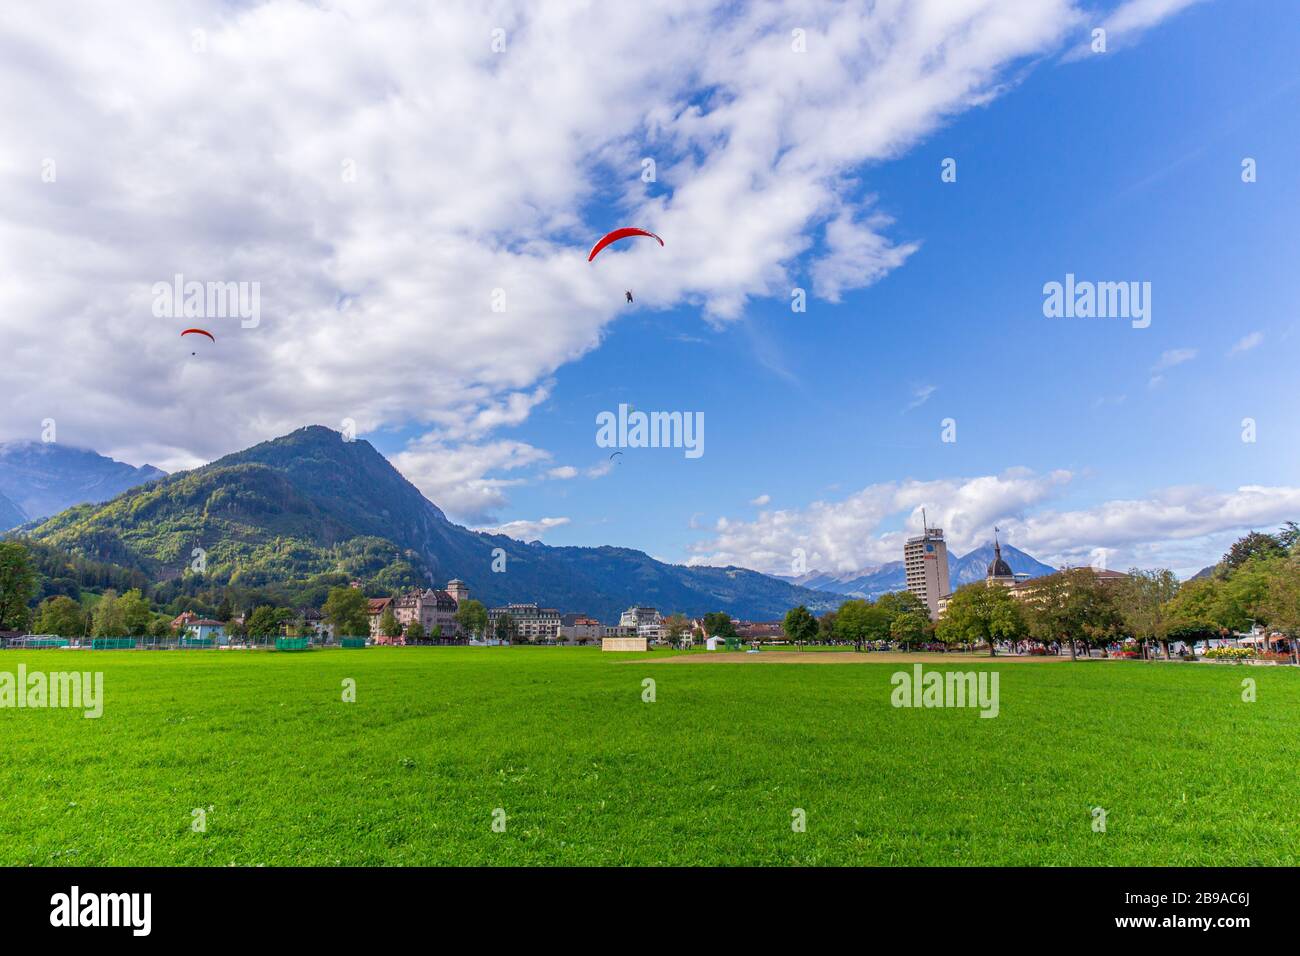 Interlaken, Schweiz - 28.09.2019 - landschaftlich grünes Feld mit Gleitschirm über Bergkette und blauem Himmel. Interlaken liegt zwischen dem Stockfoto